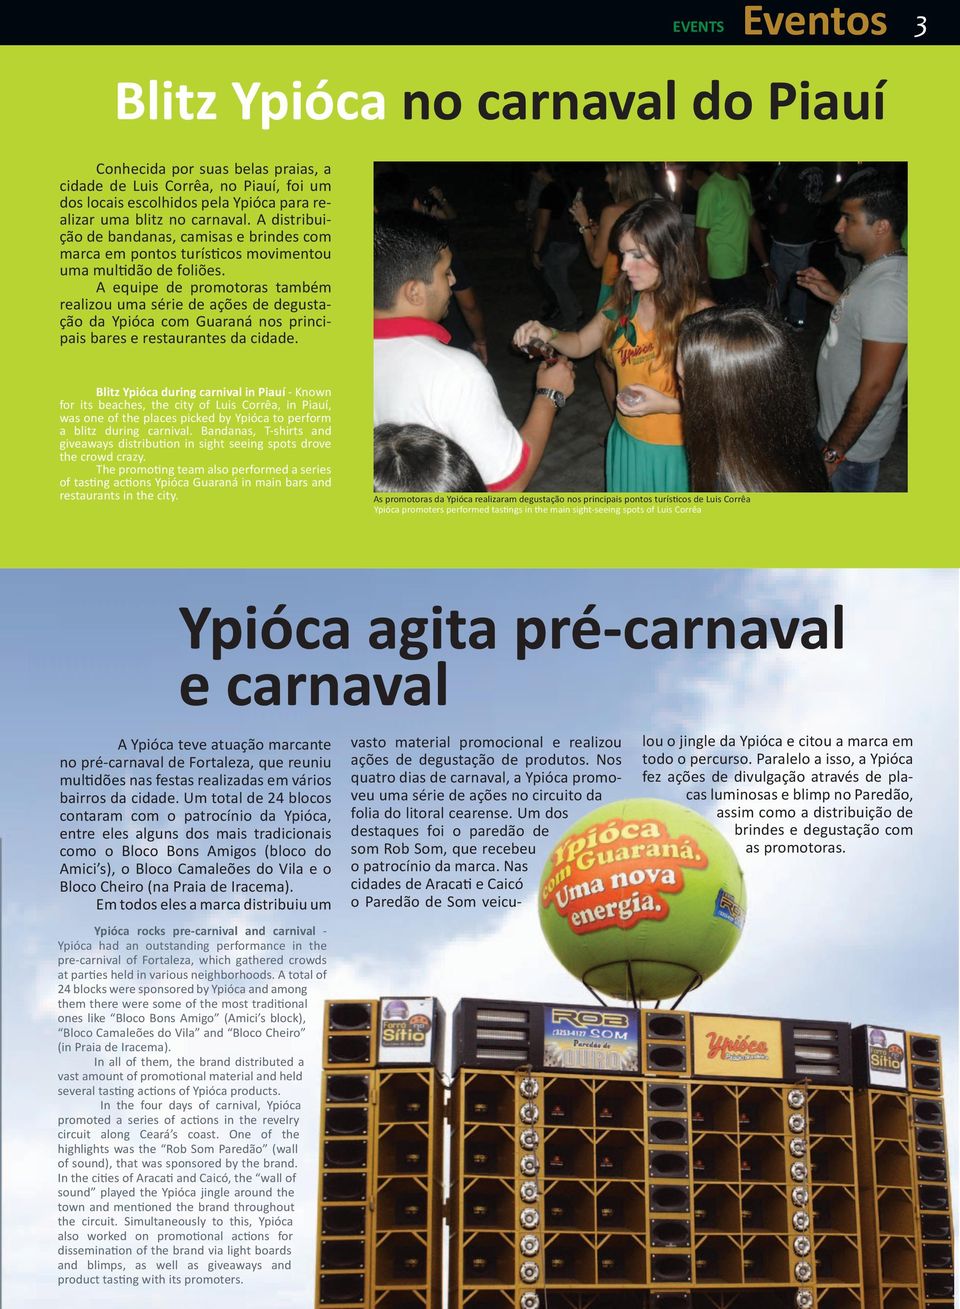 A equipe de promotoras também realizou uma série de ações de degustação da Ypióca com Guaraná nos principais bares e restaurantes da cidade.